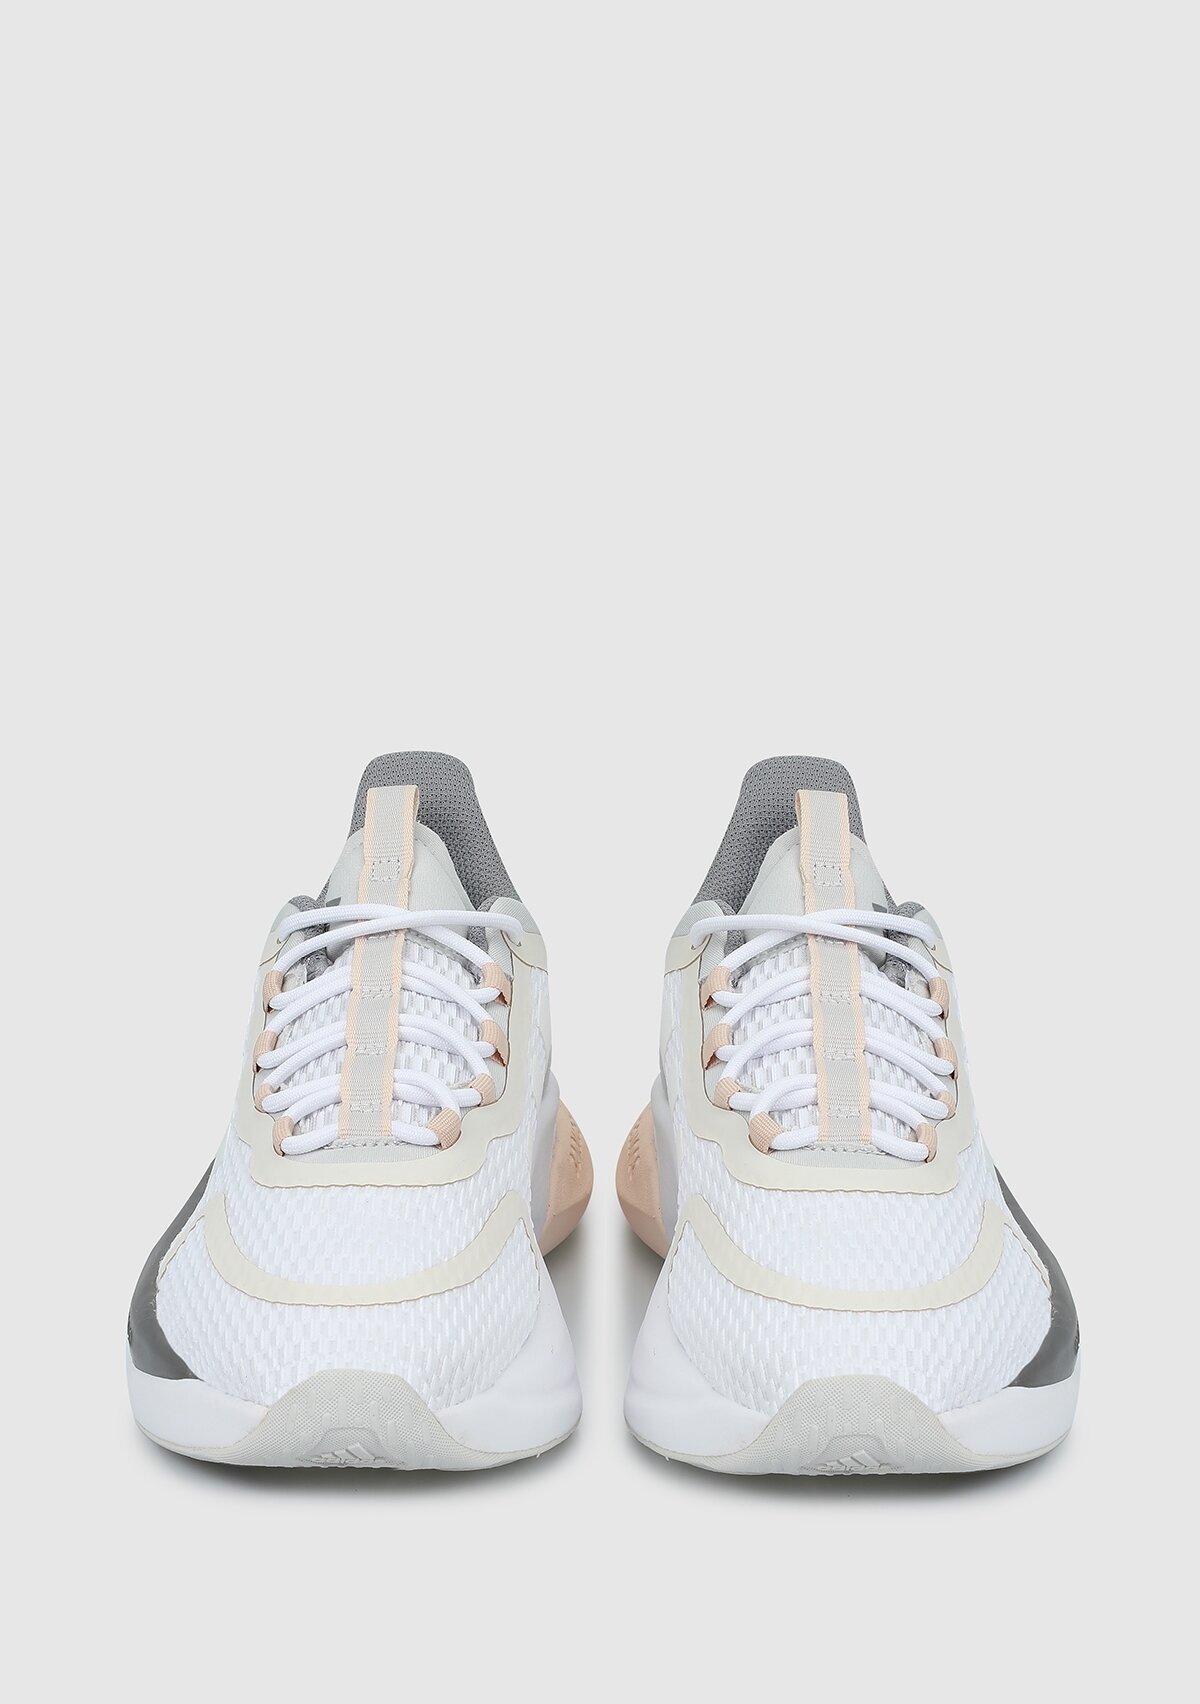 adidas Alphabounce +Beyaz kadın koşu Ayakkabısı hp6147